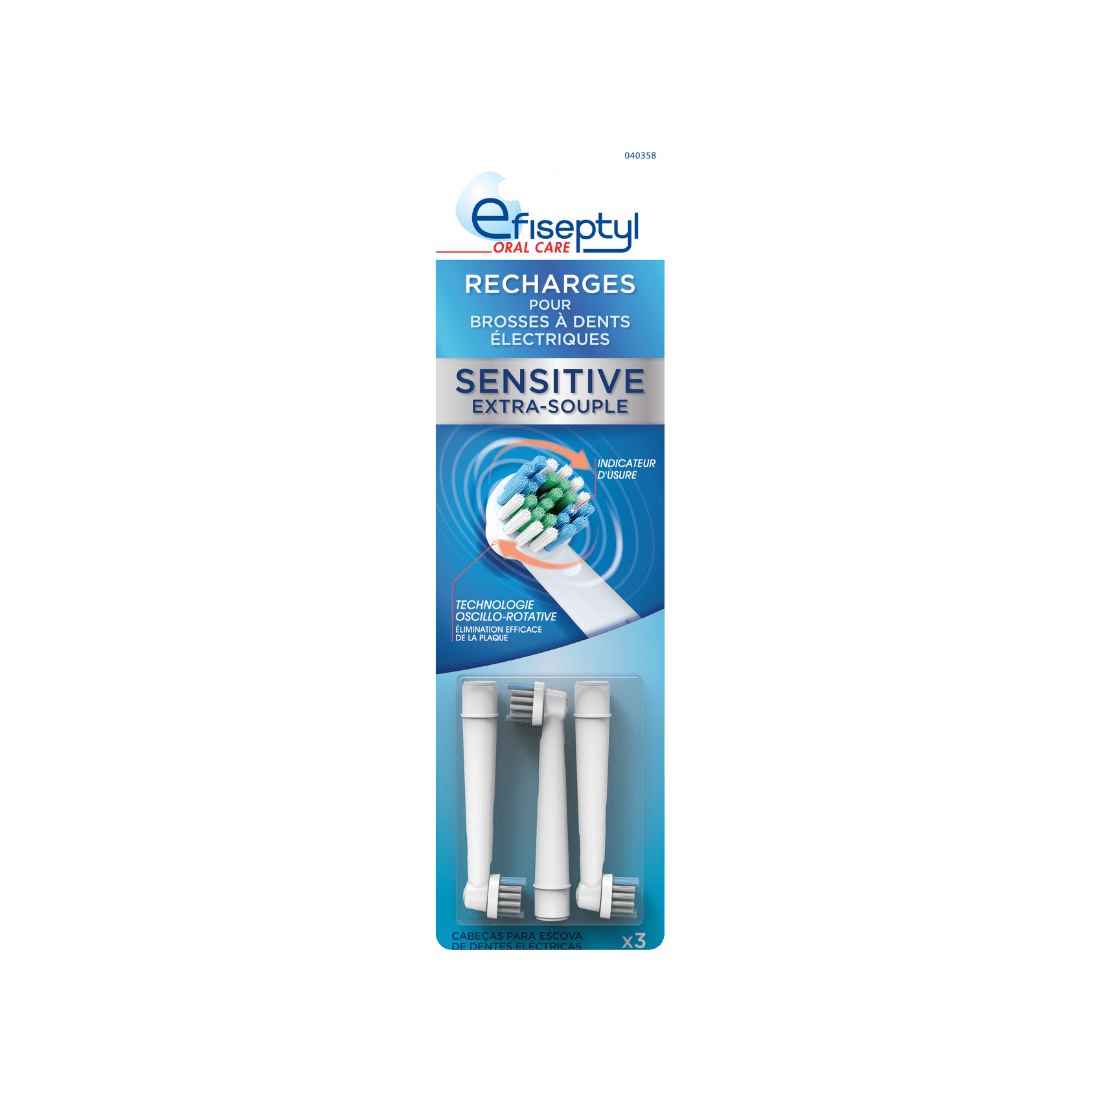 Recharges pour brosse à dents électrique, par EFISEPTYL